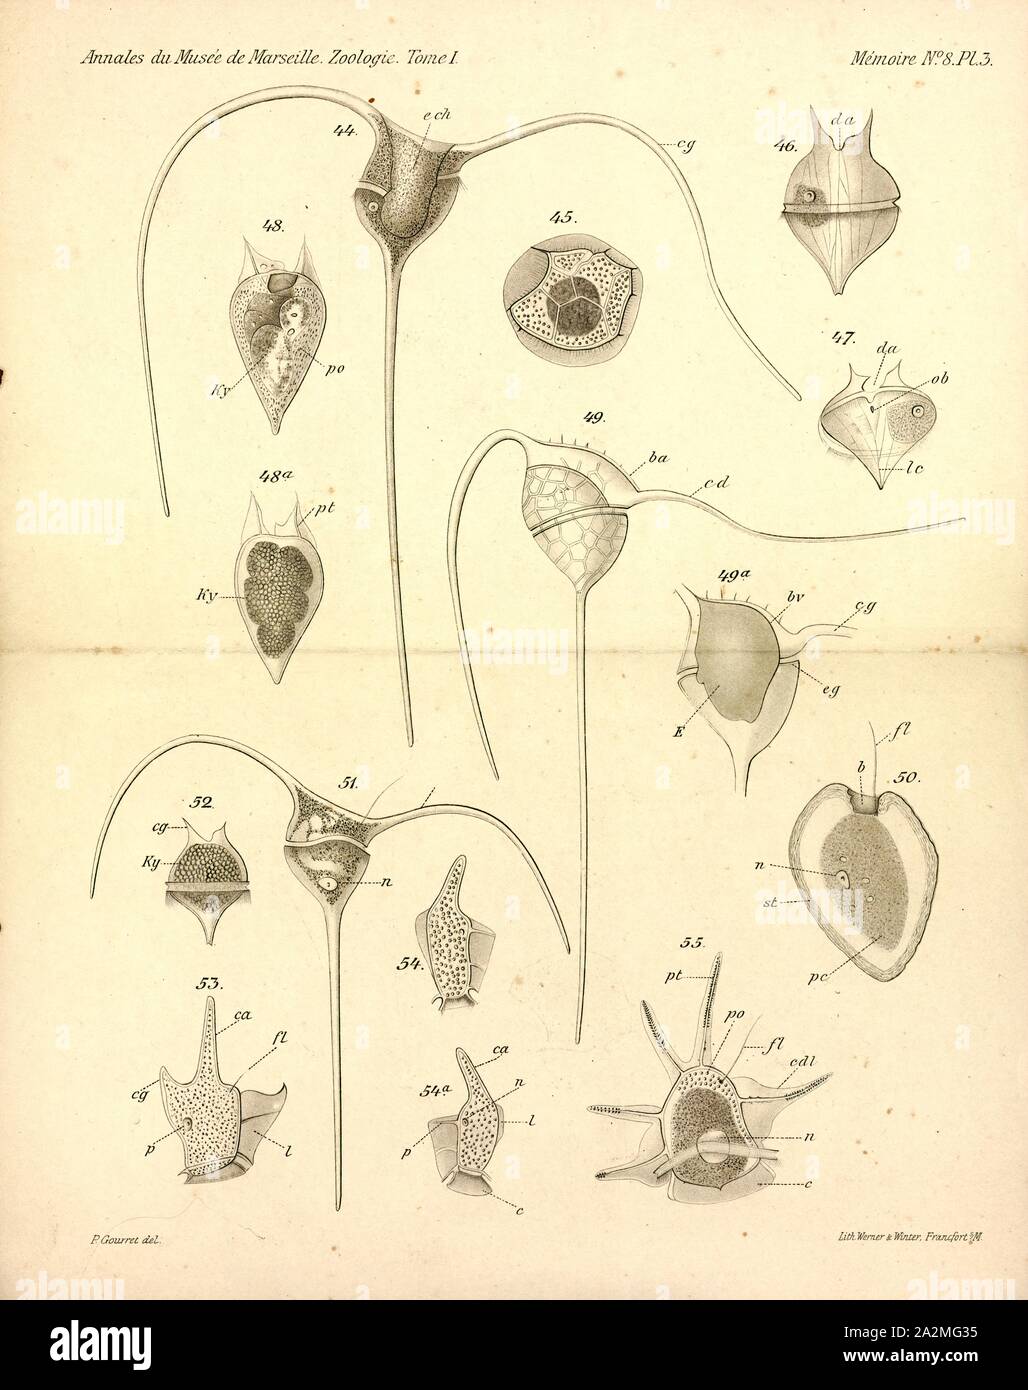 Dinophysis allieri, Imprimir Dinophysis es un género de dinoflagelados común en las zonas tropicales, templadas, las aguas costeras y oceánicas. Fue descrita por primera vez en 1839 por Christian Gottfried Ehrenberg Foto de stock